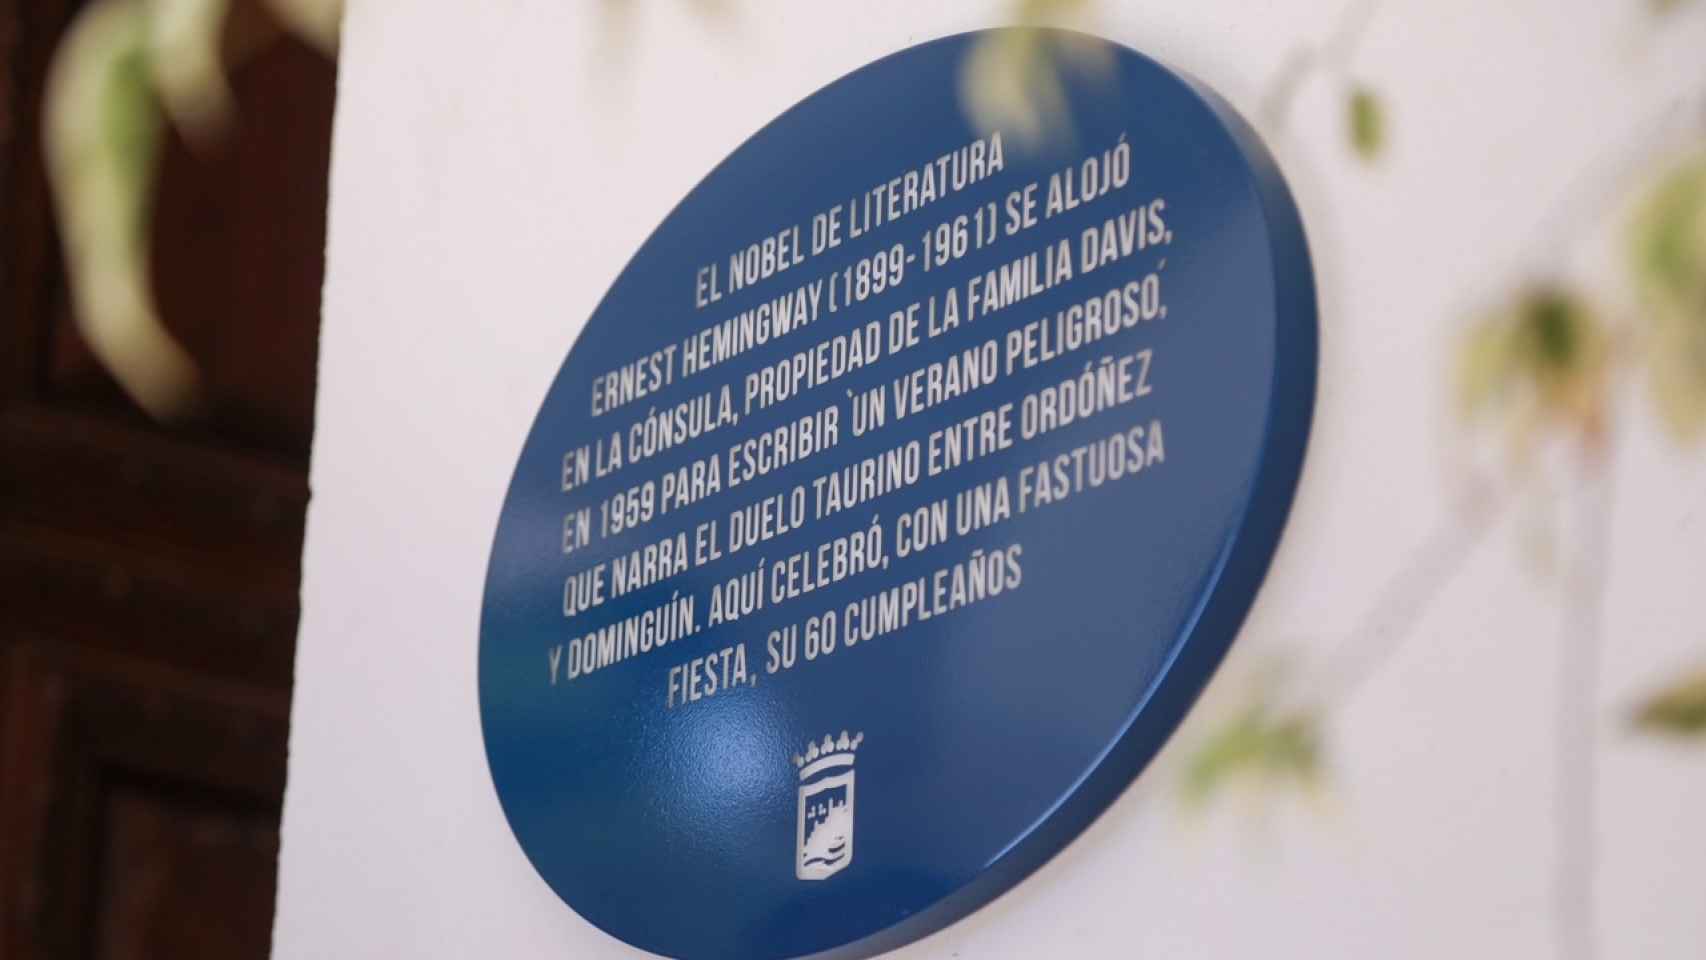 La placa Málaga hace historia en honor a Hemingway.